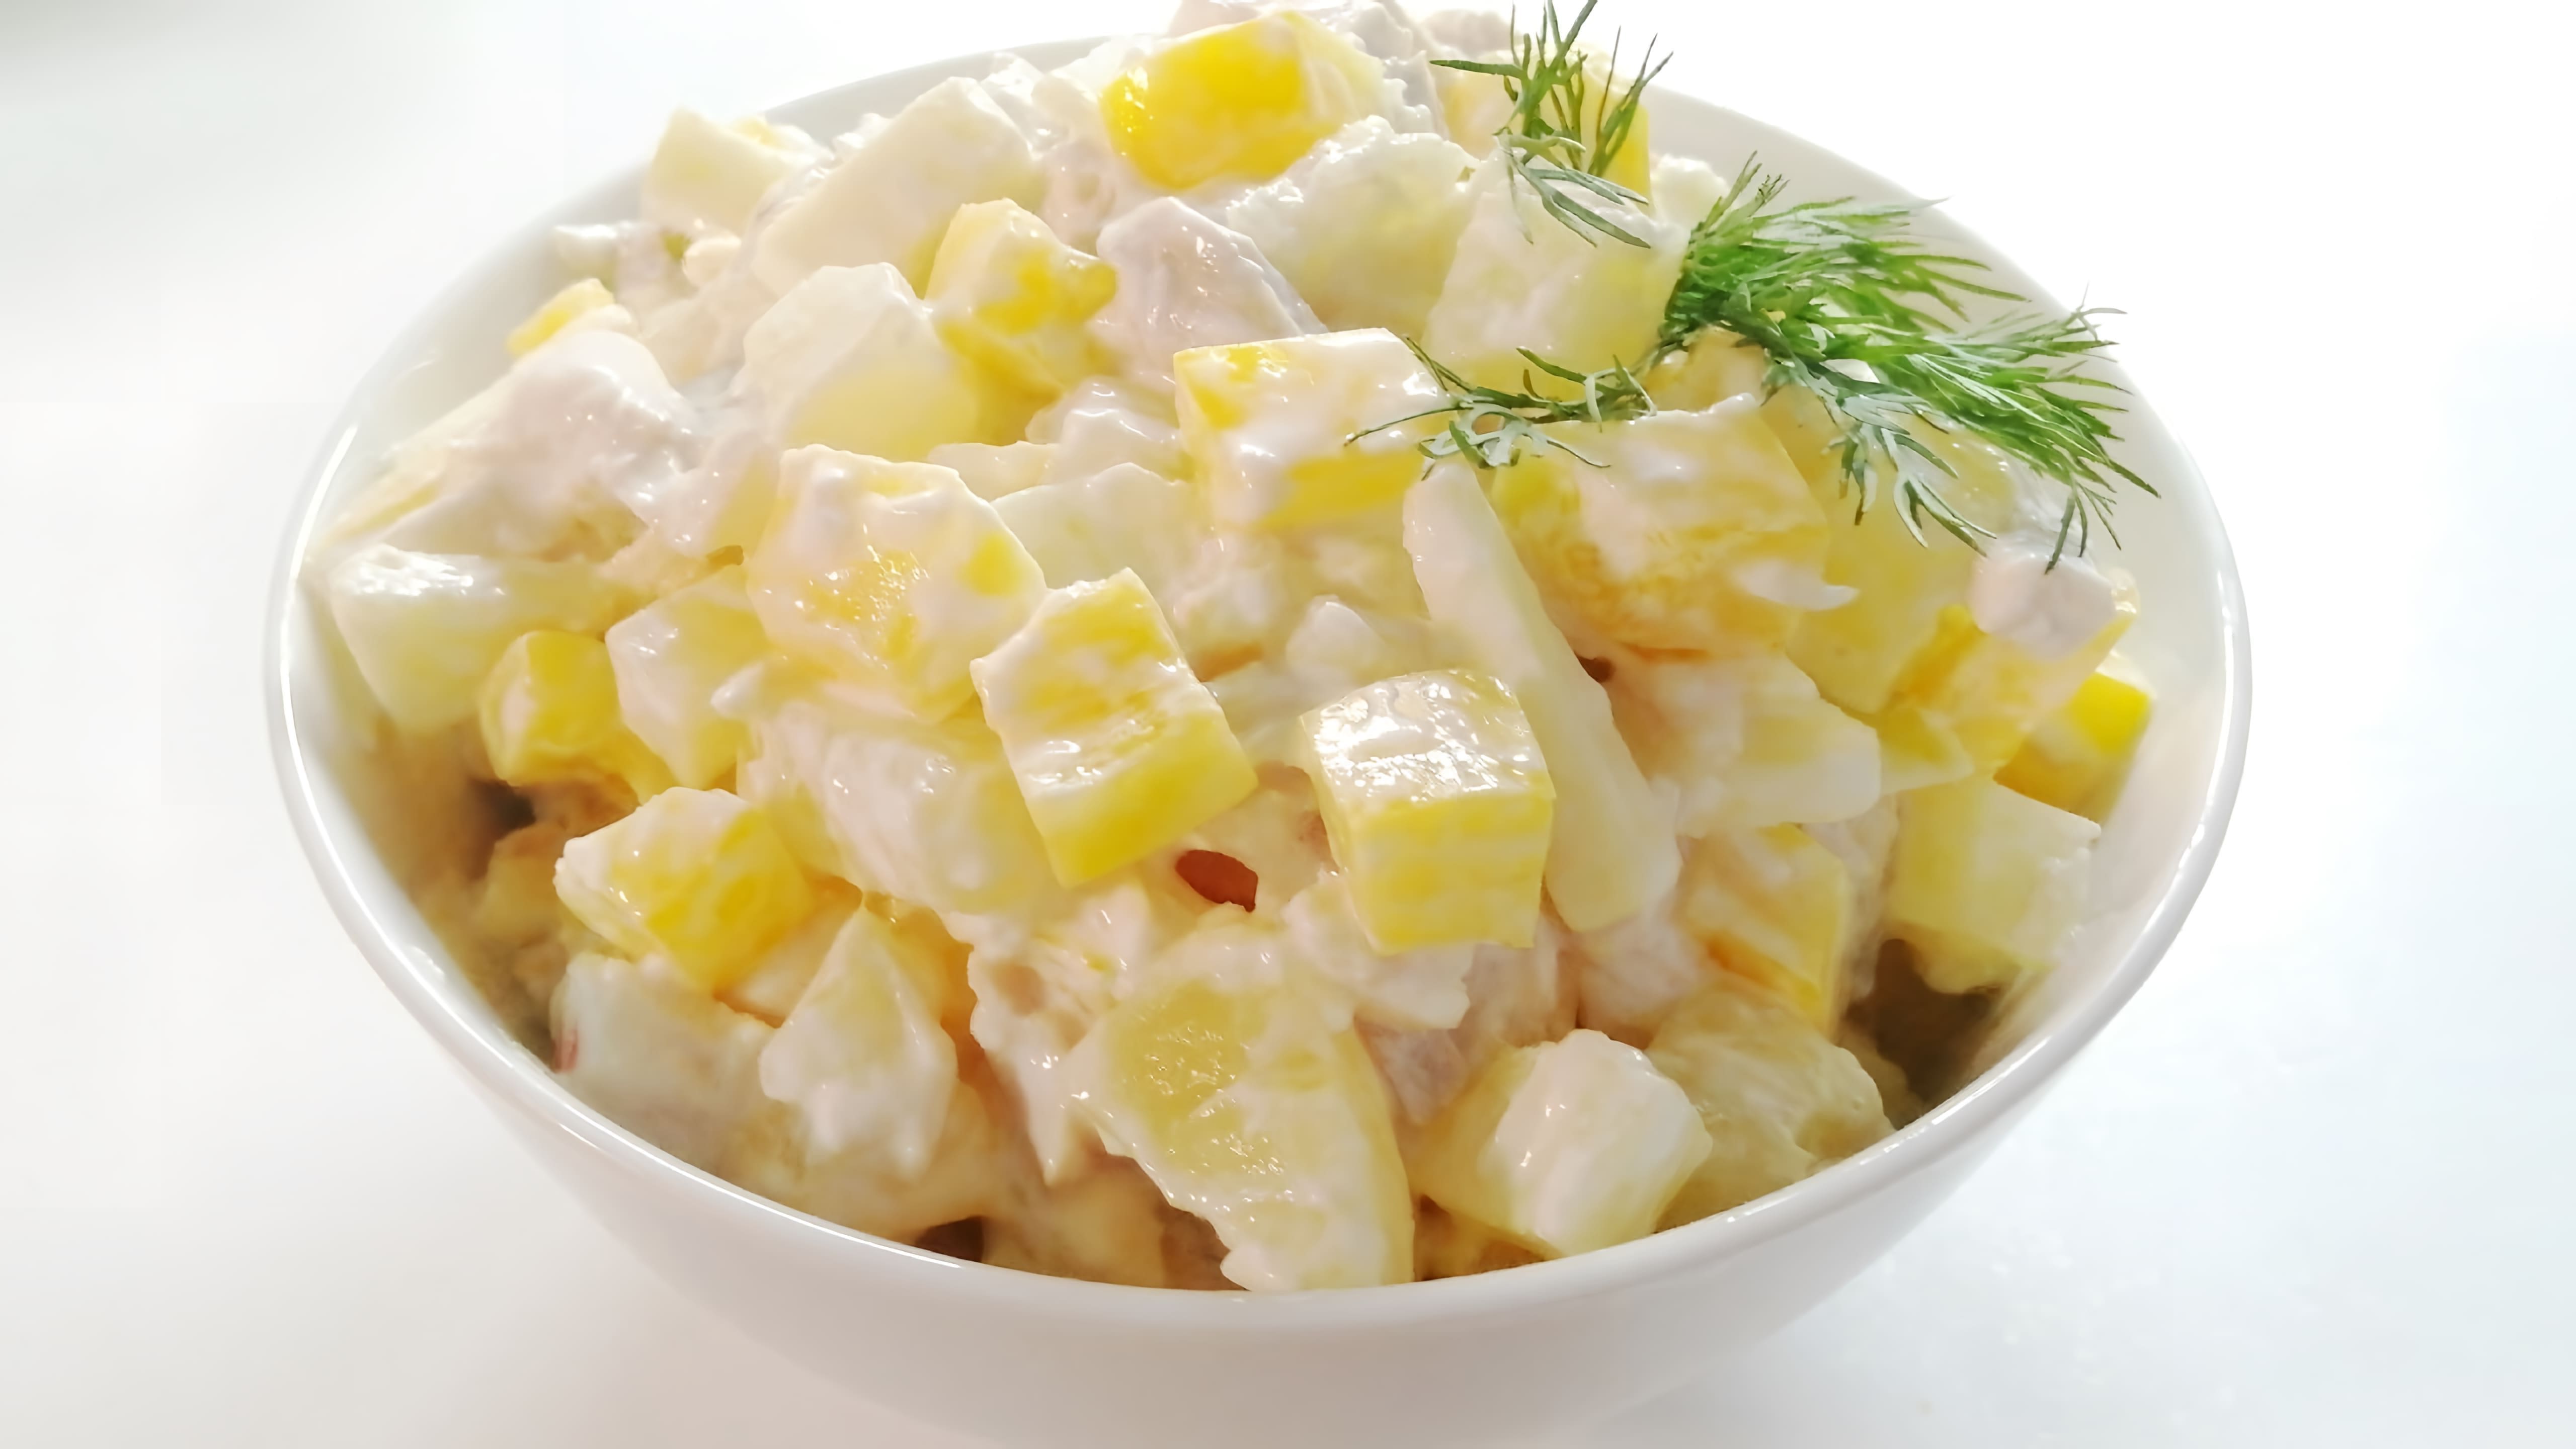 Салат с ананасом и болгарским перцем - это вкусное и легкое блюдо, которое можно приготовить быстро и просто